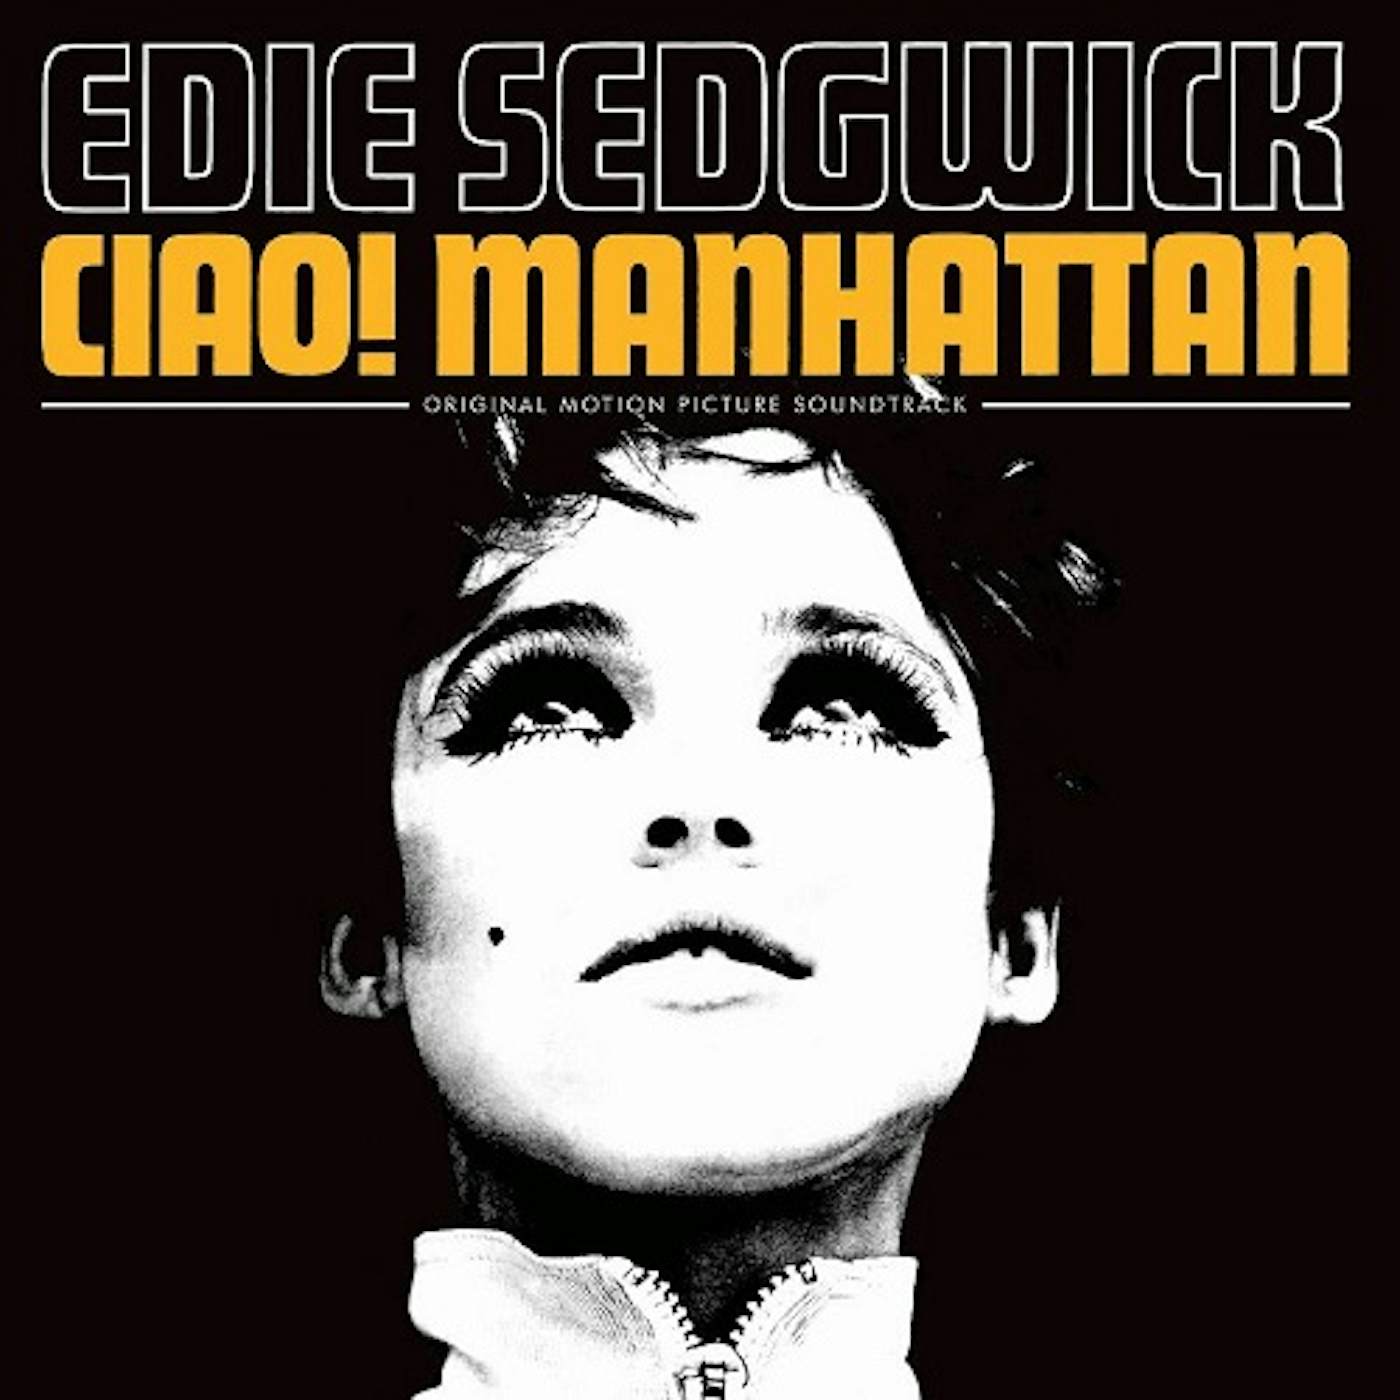 CIAO! MANHATTAN / Original Soundtrack Vinyl Record